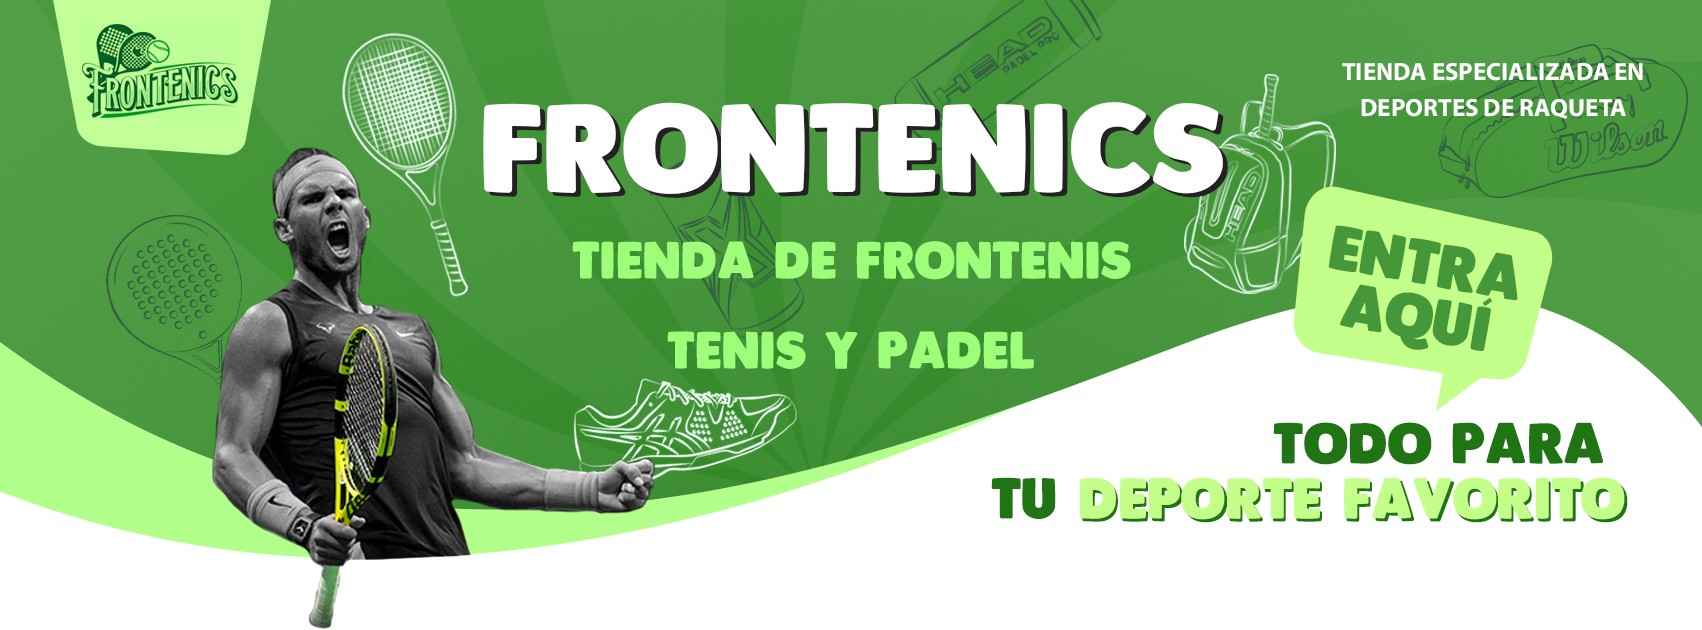 Tienda de Frontenis, Tenis y Padel